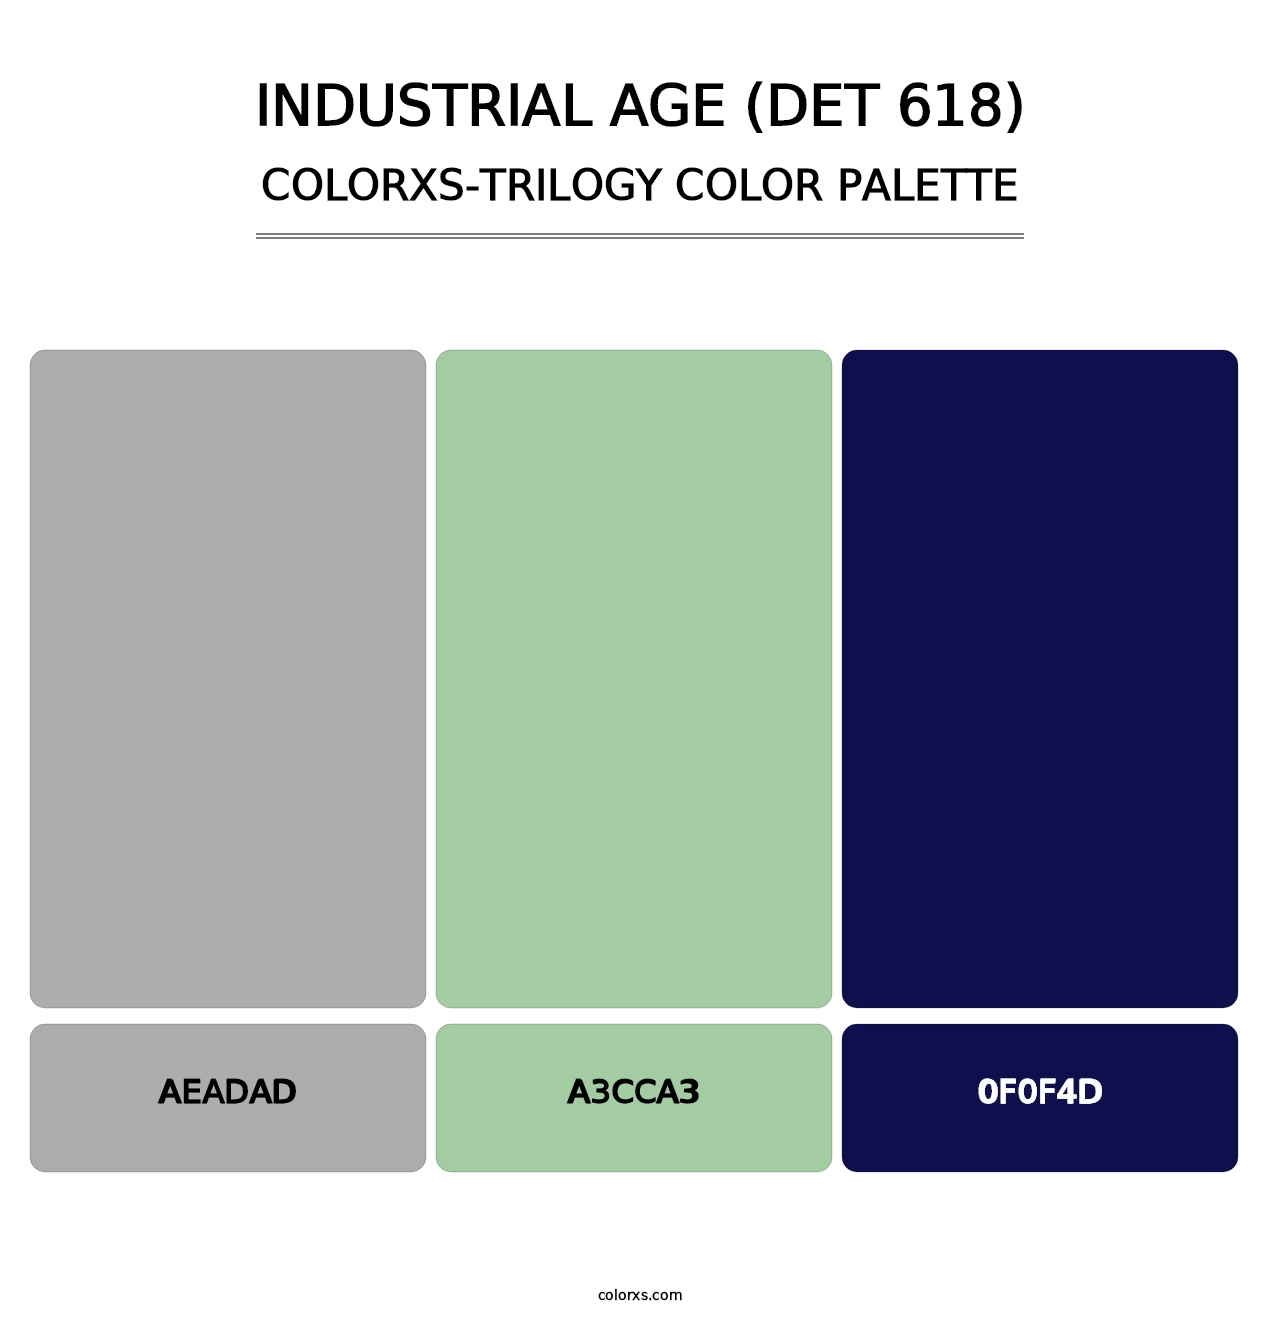 Industrial Age (DET 618) - Colorxs Trilogy Palette